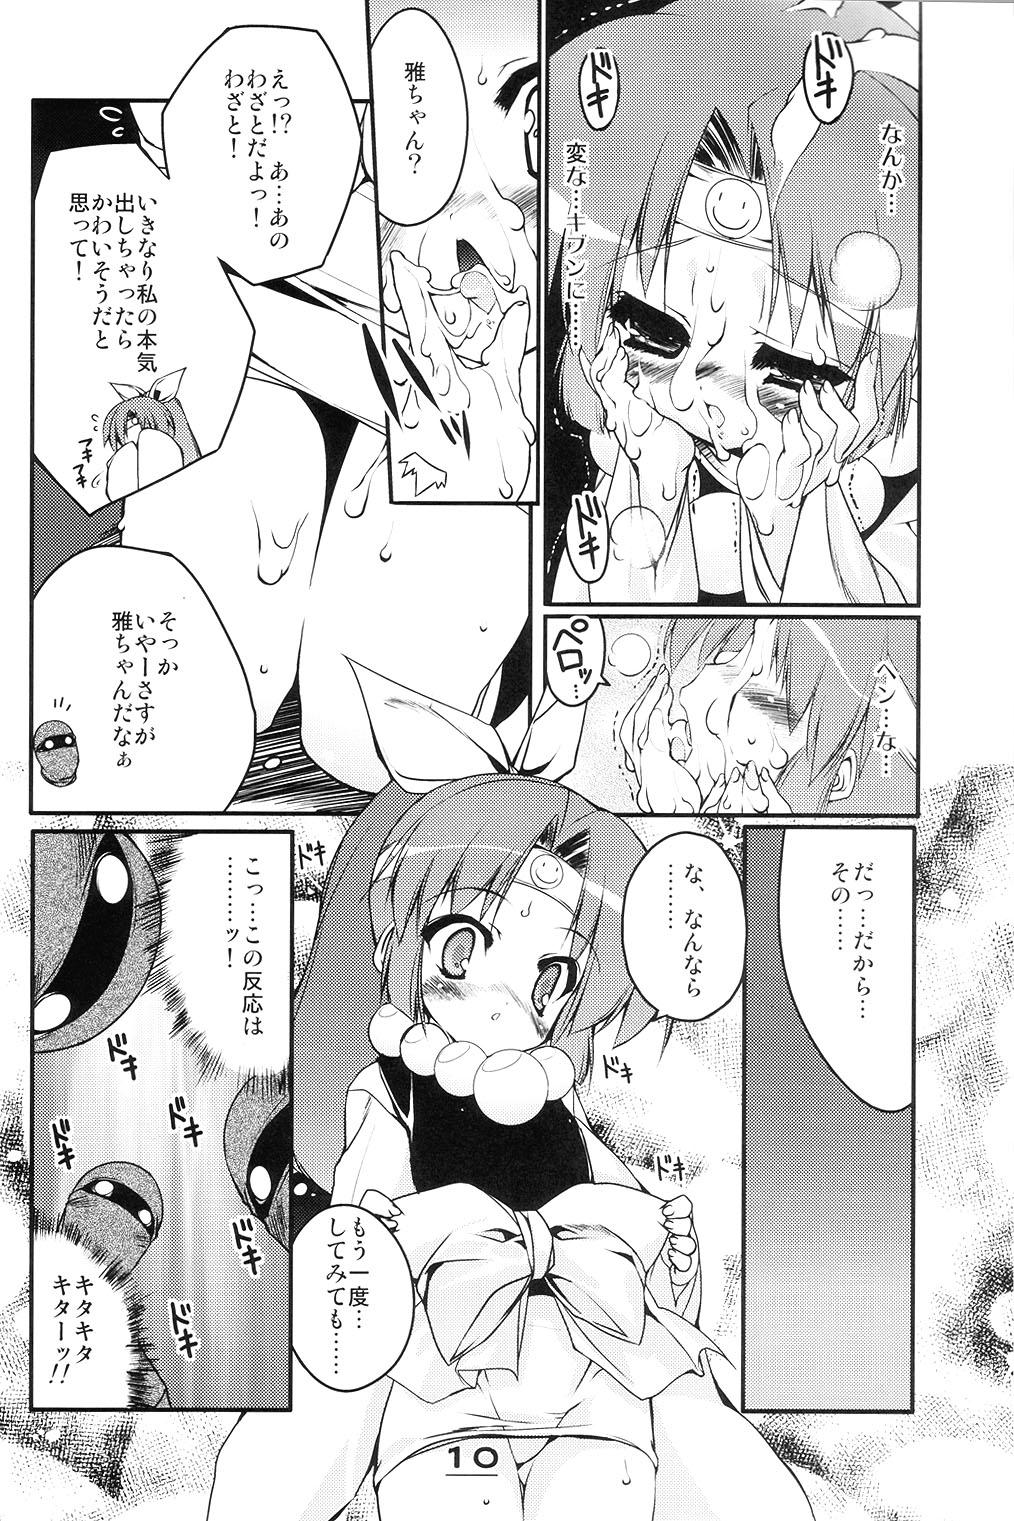 Cum Swallowing Momoiro Ninpou Hidensho - 2x2 shinobuden Shoplifter - Page 9